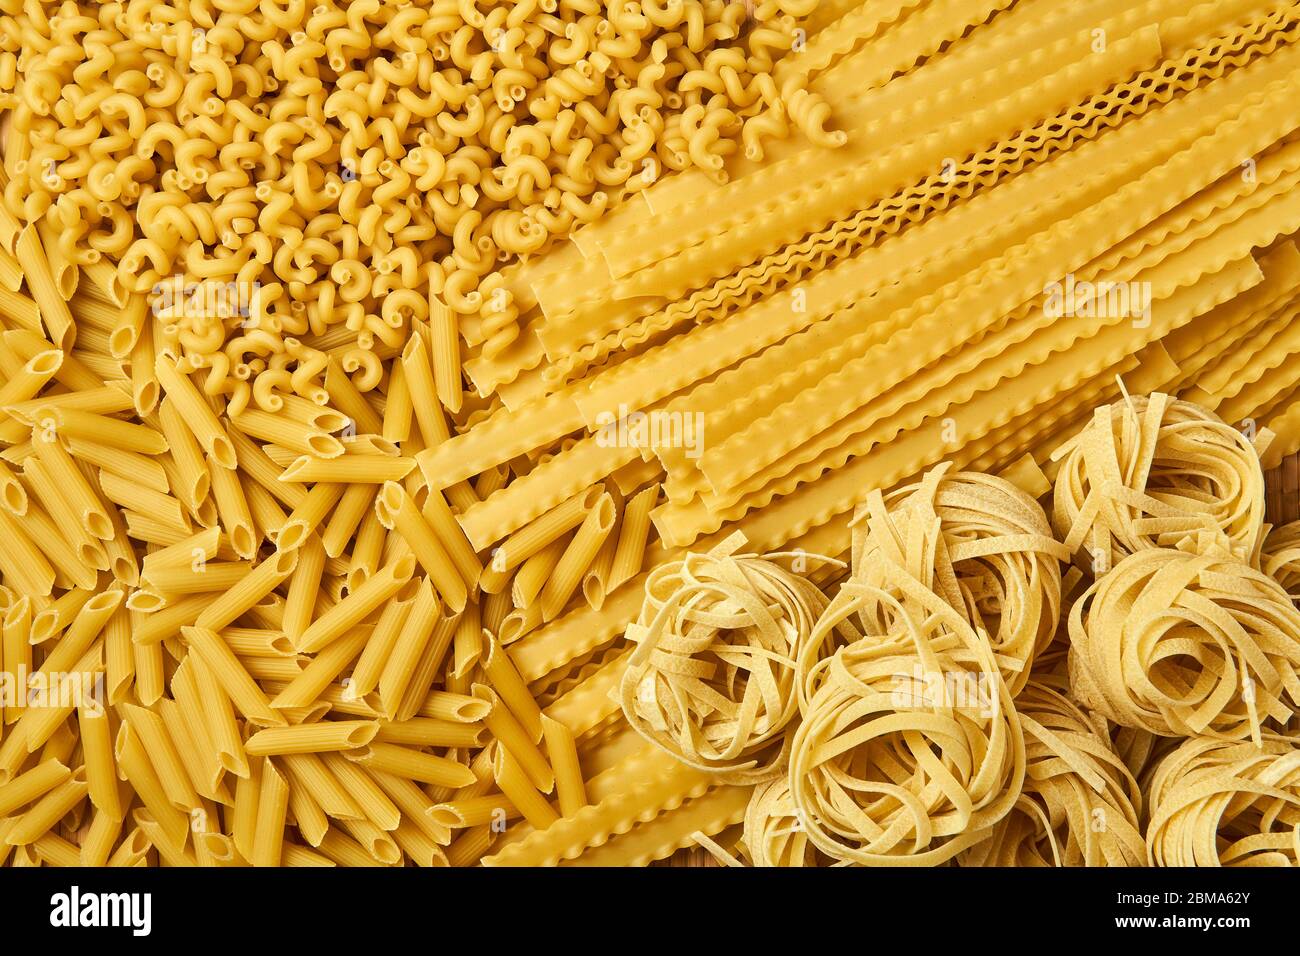 sfondo dorato di pasta secca sparsa di varie varietà Foto Stock